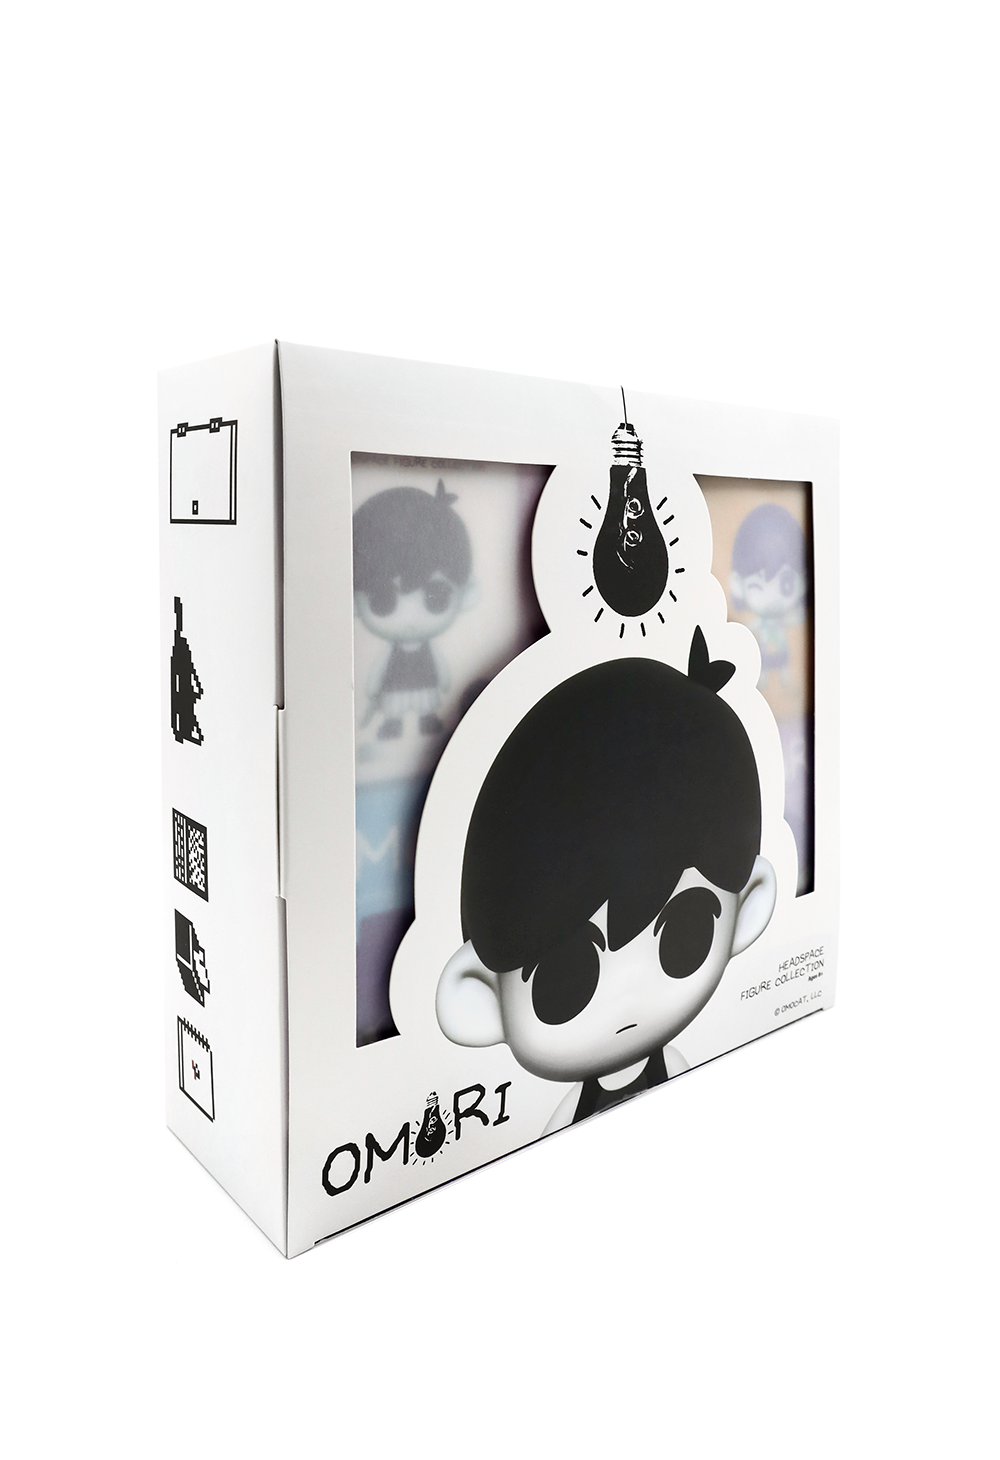 Authentic / Genuine Official OMOCAT Omori HERO Plush - Depop